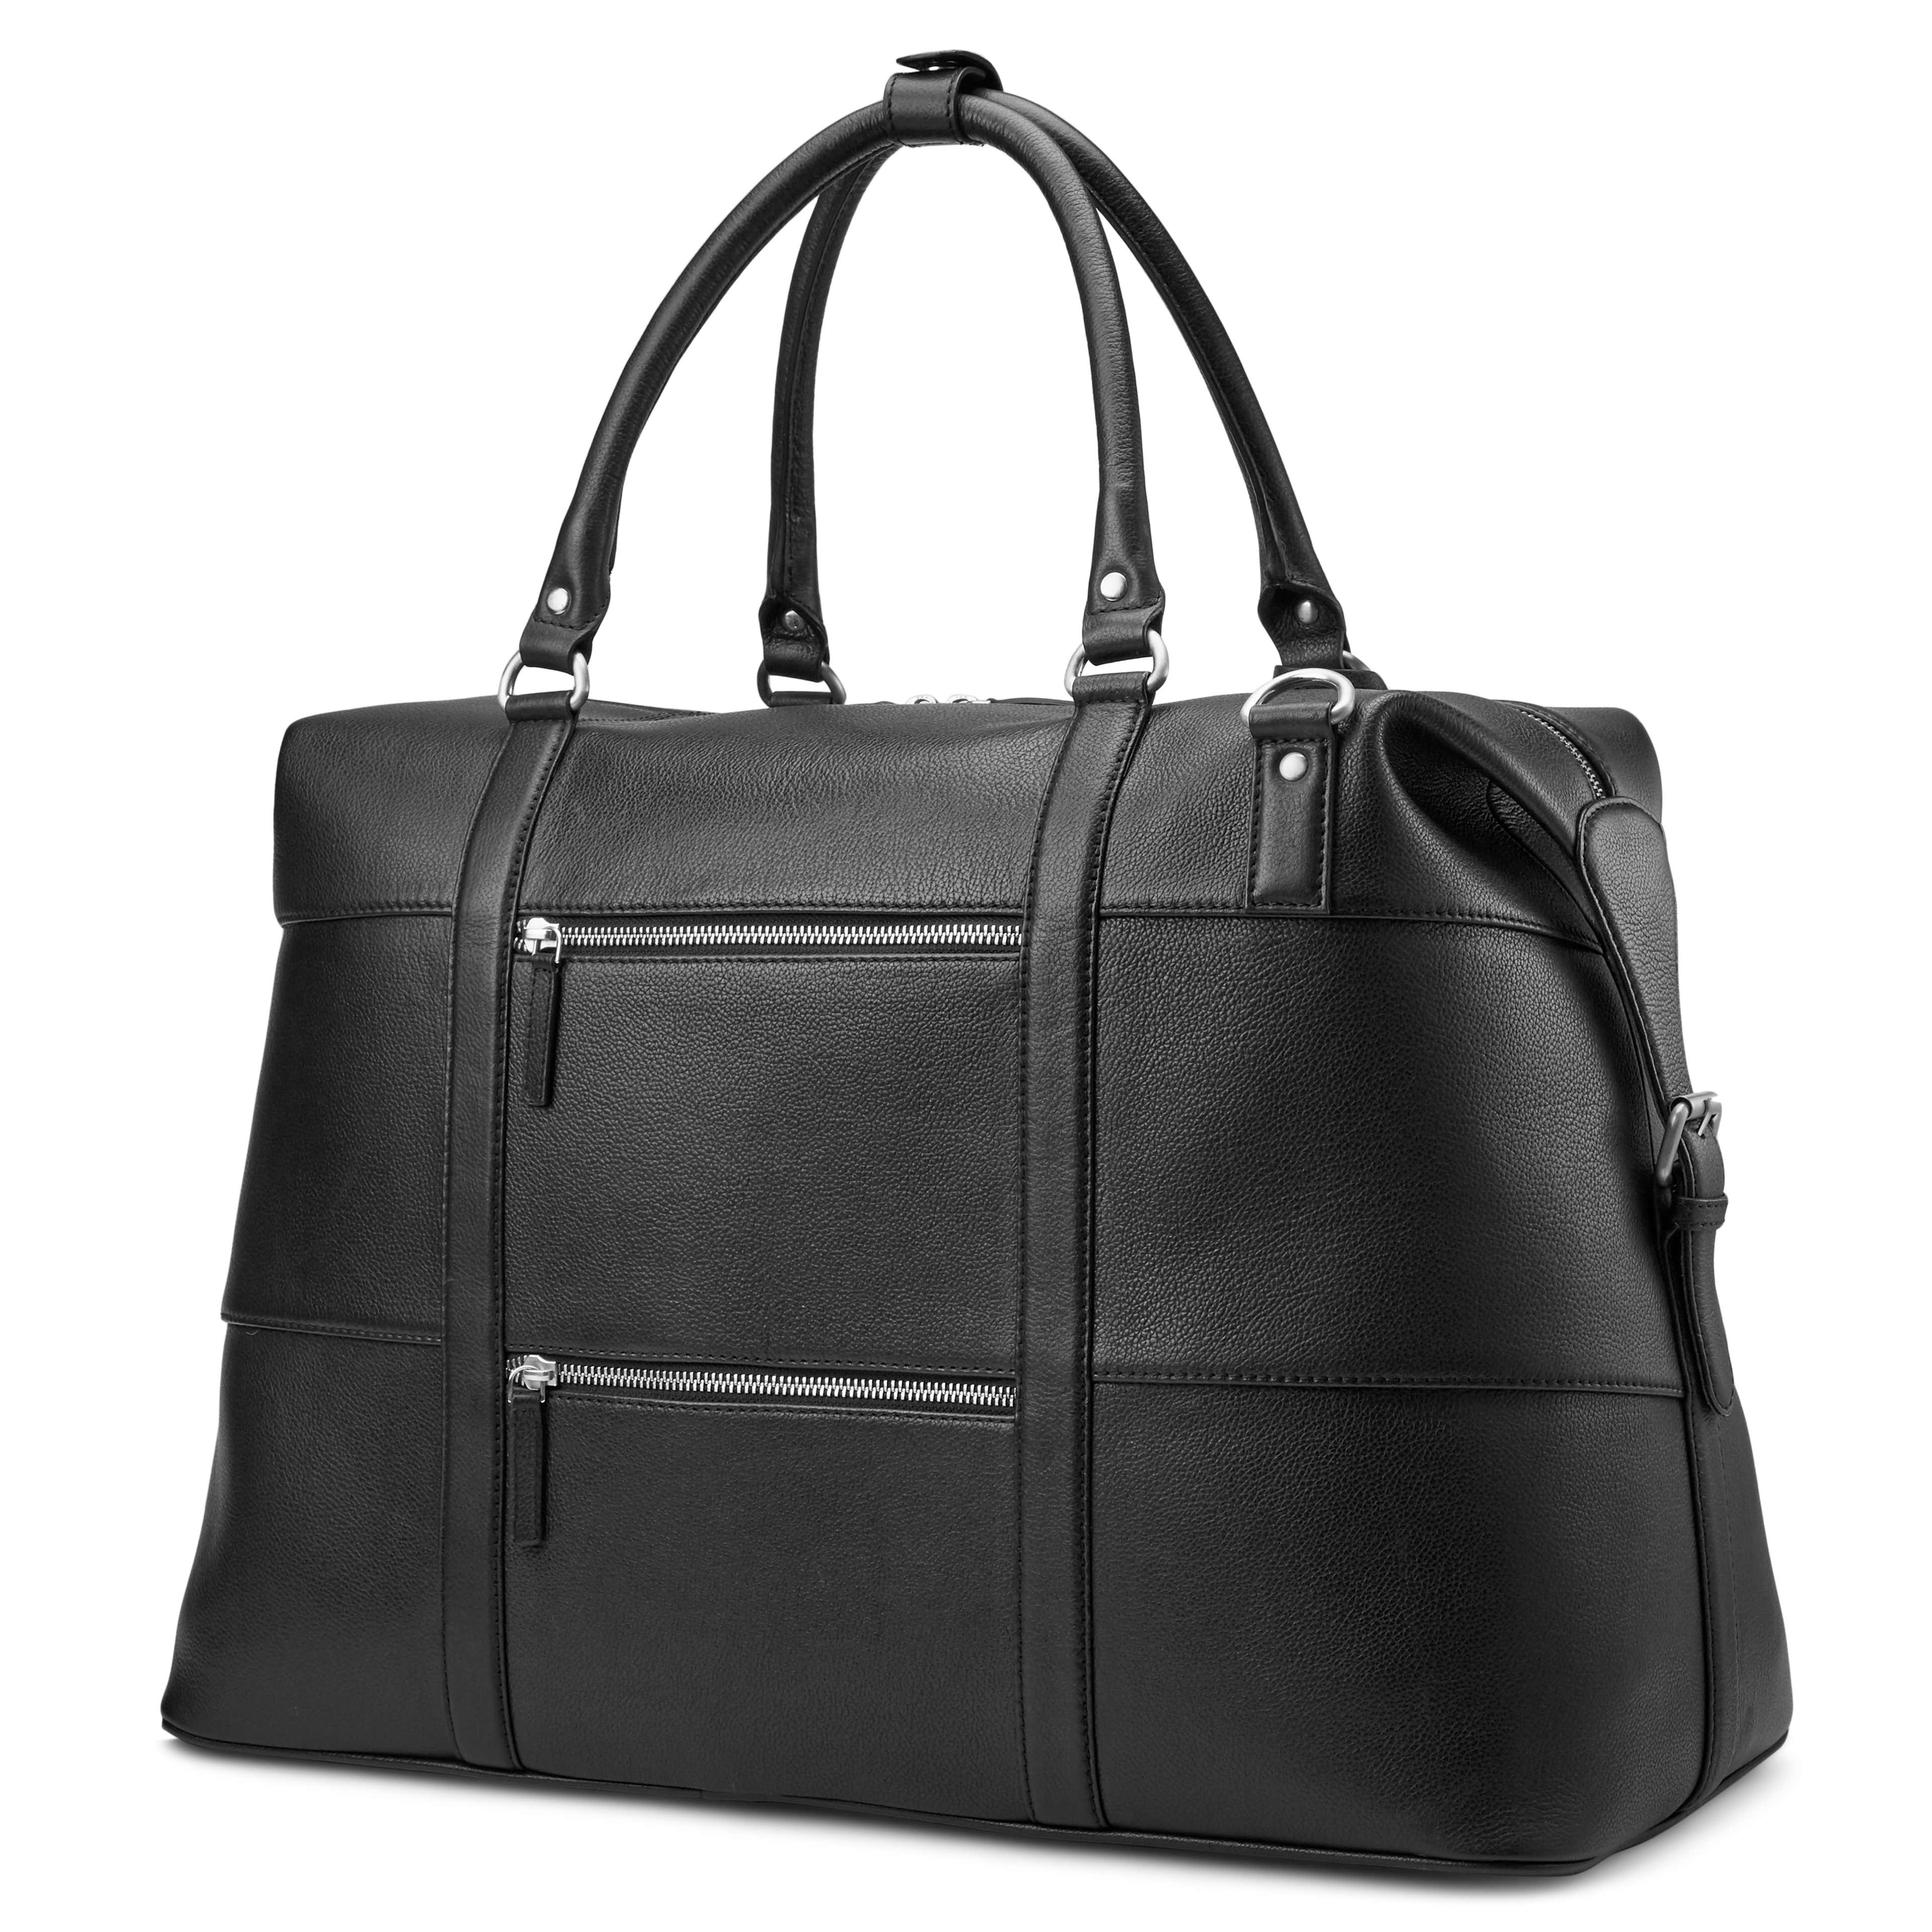 Sean Black Leather Weekender Bag